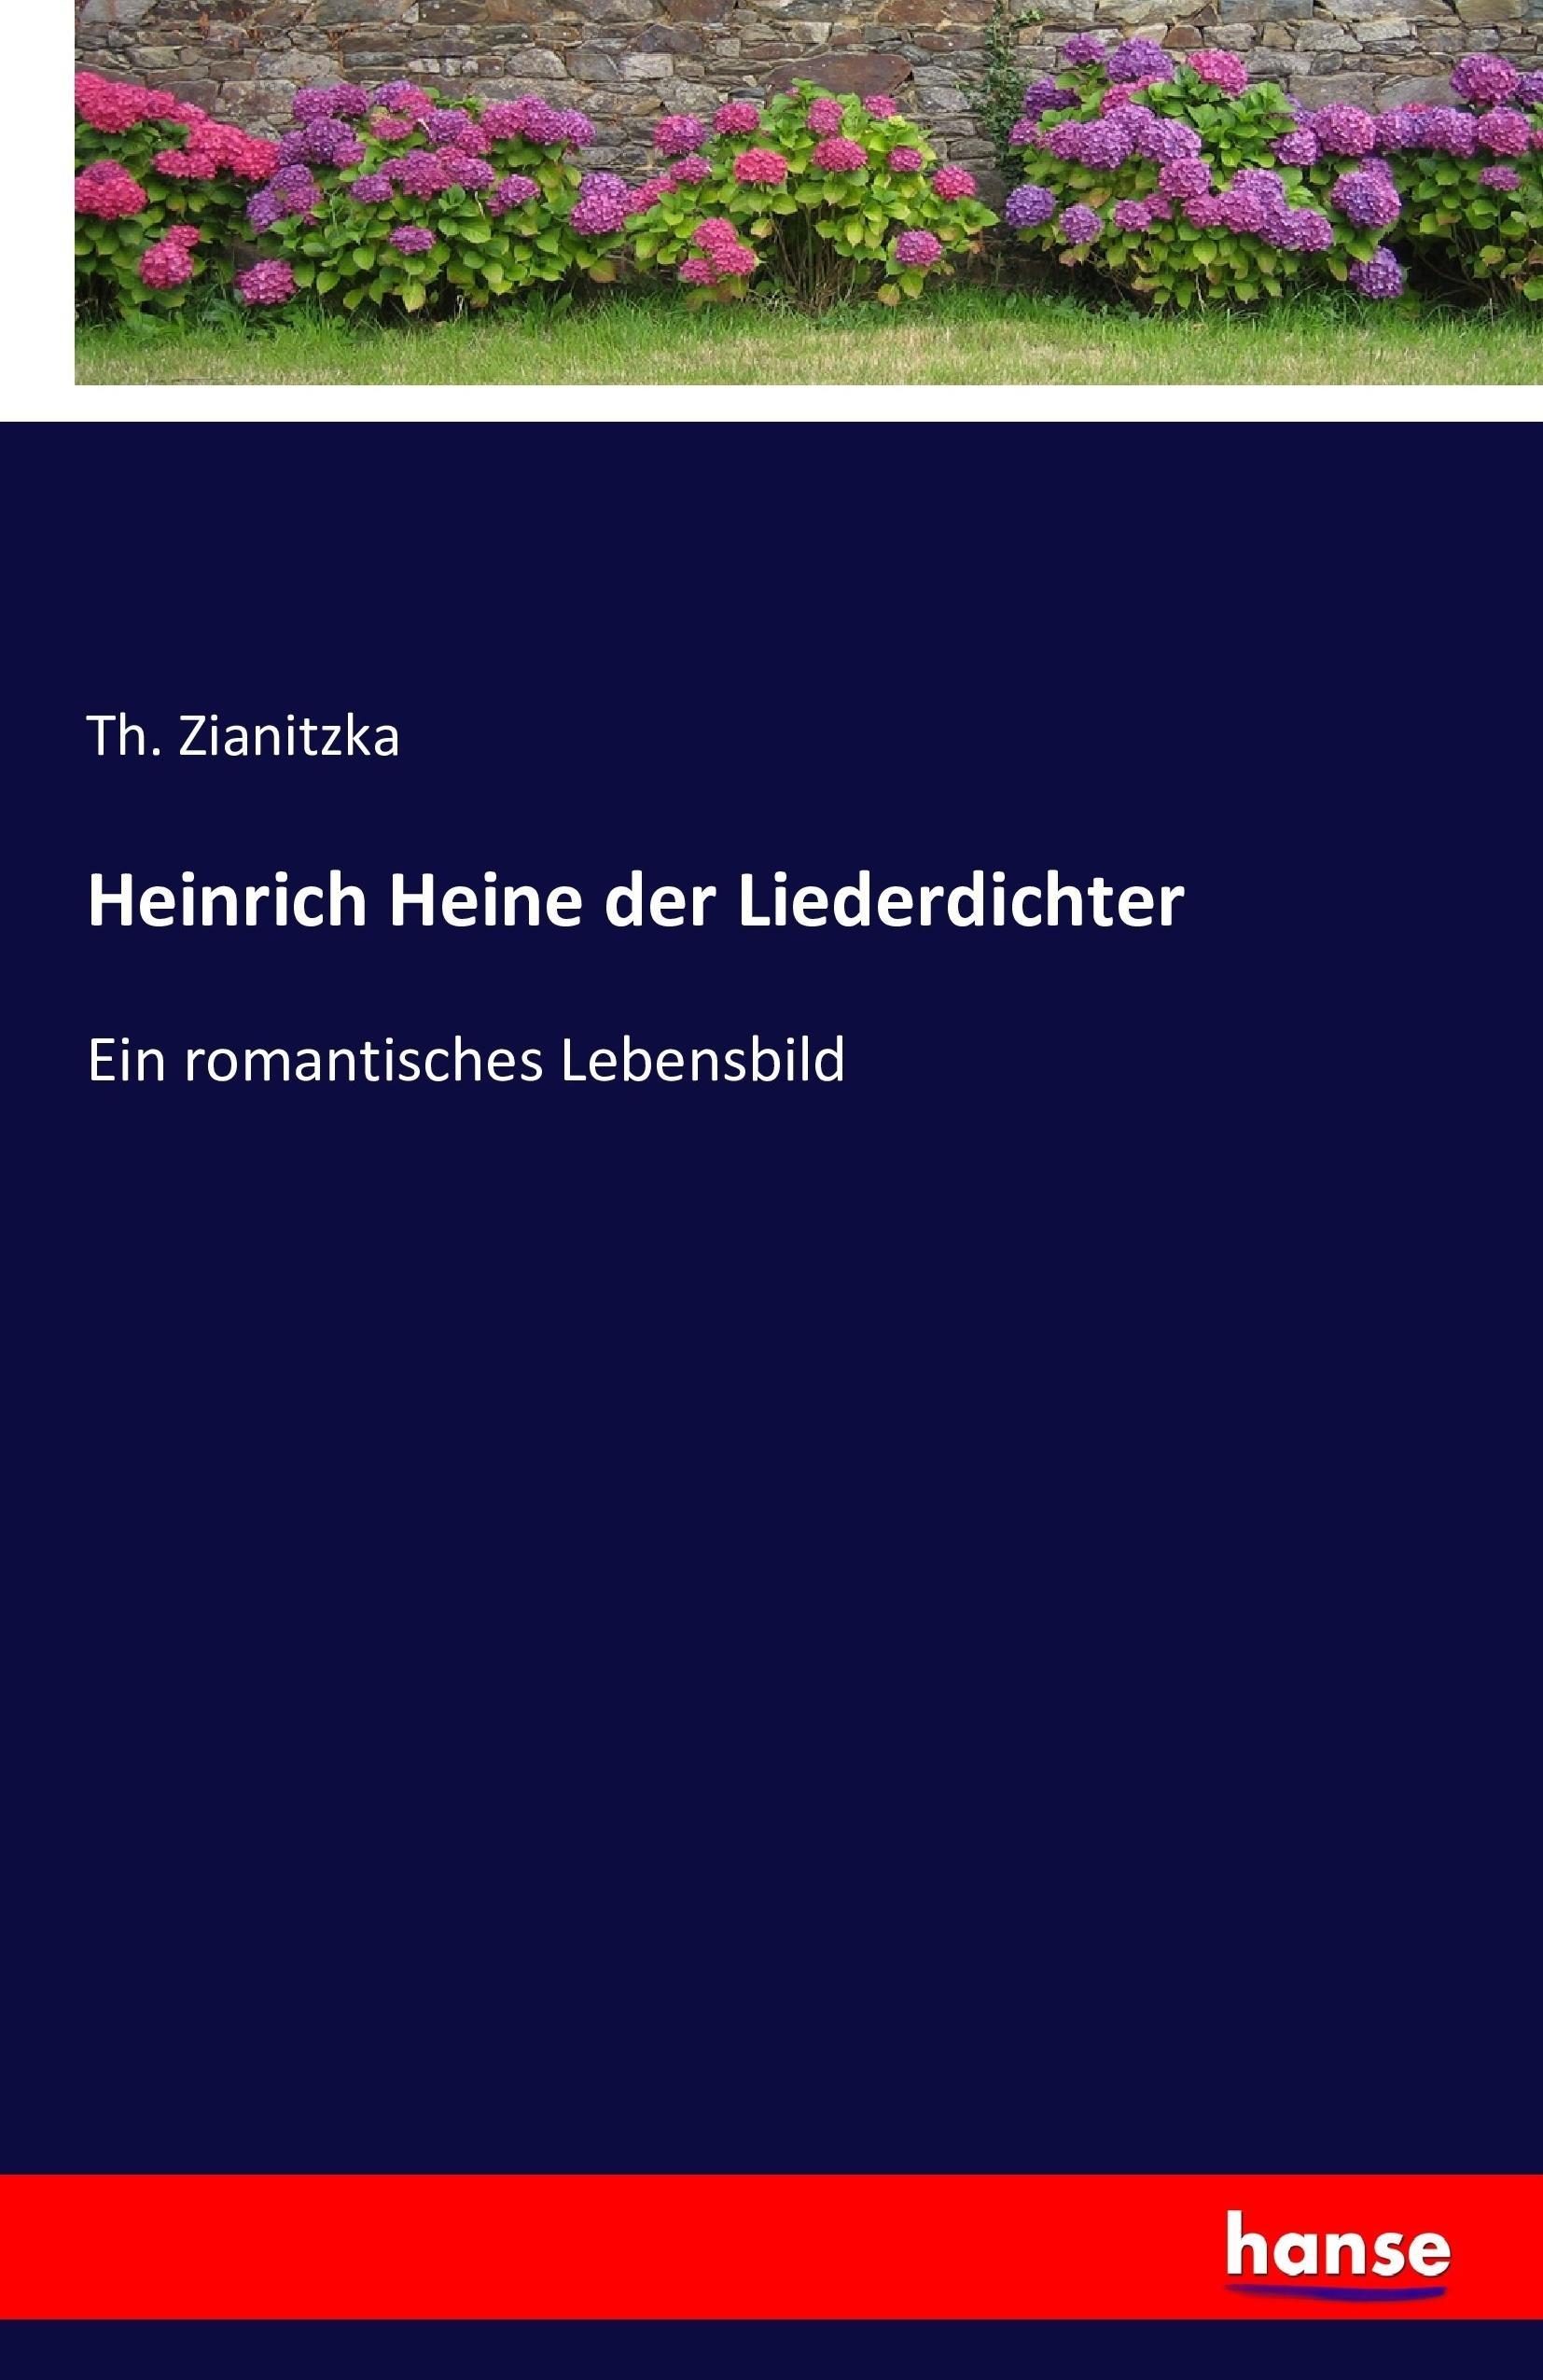 Heinrich Heine der Liederdichter - Zianitzka, Th.